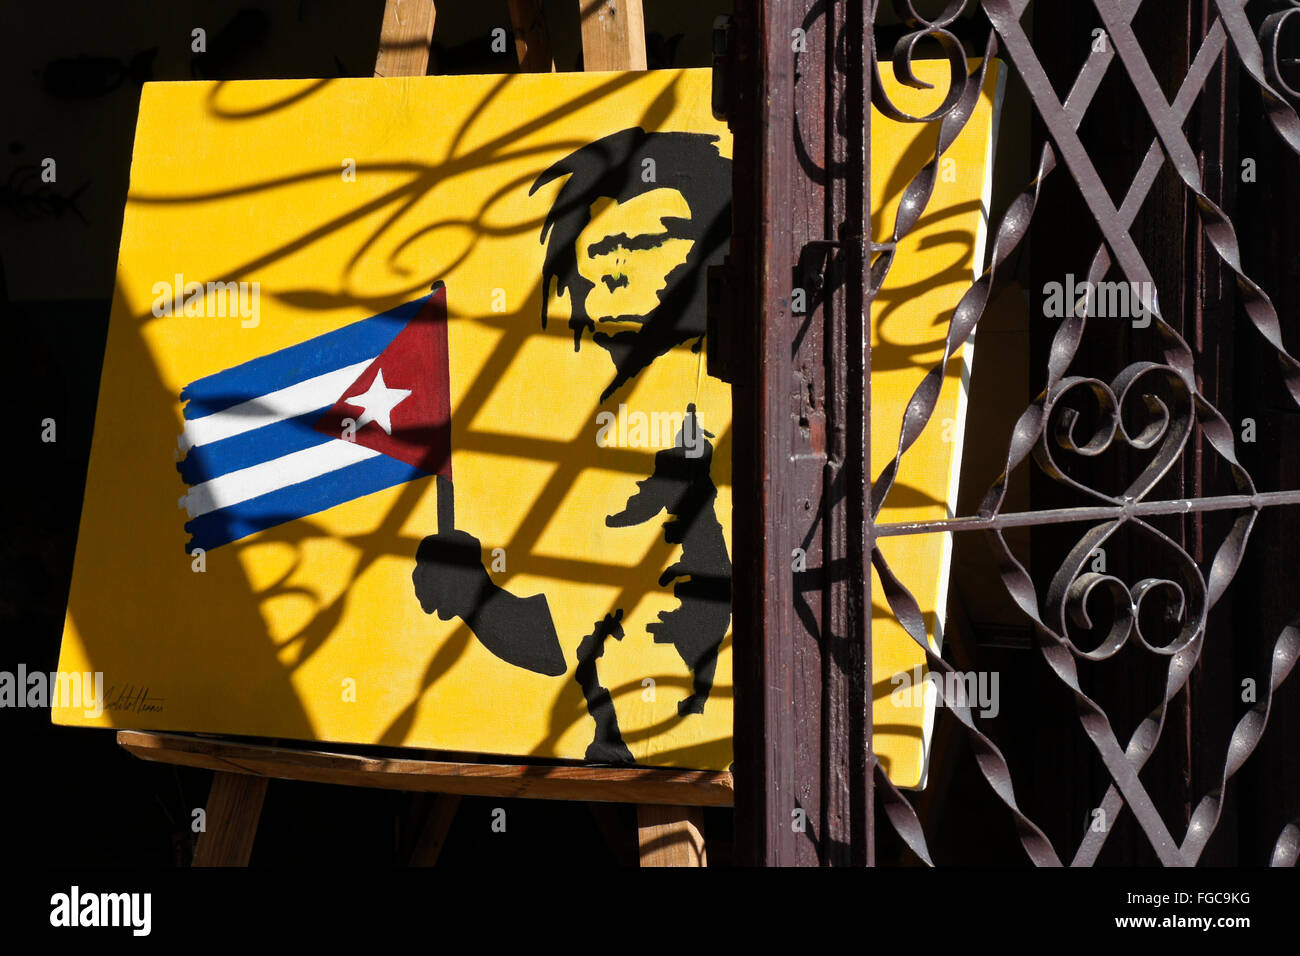 Galería de pintura en las parrillas de fundición de hierro forjado con sombra, Cienfuegos, Cuba Foto de stock